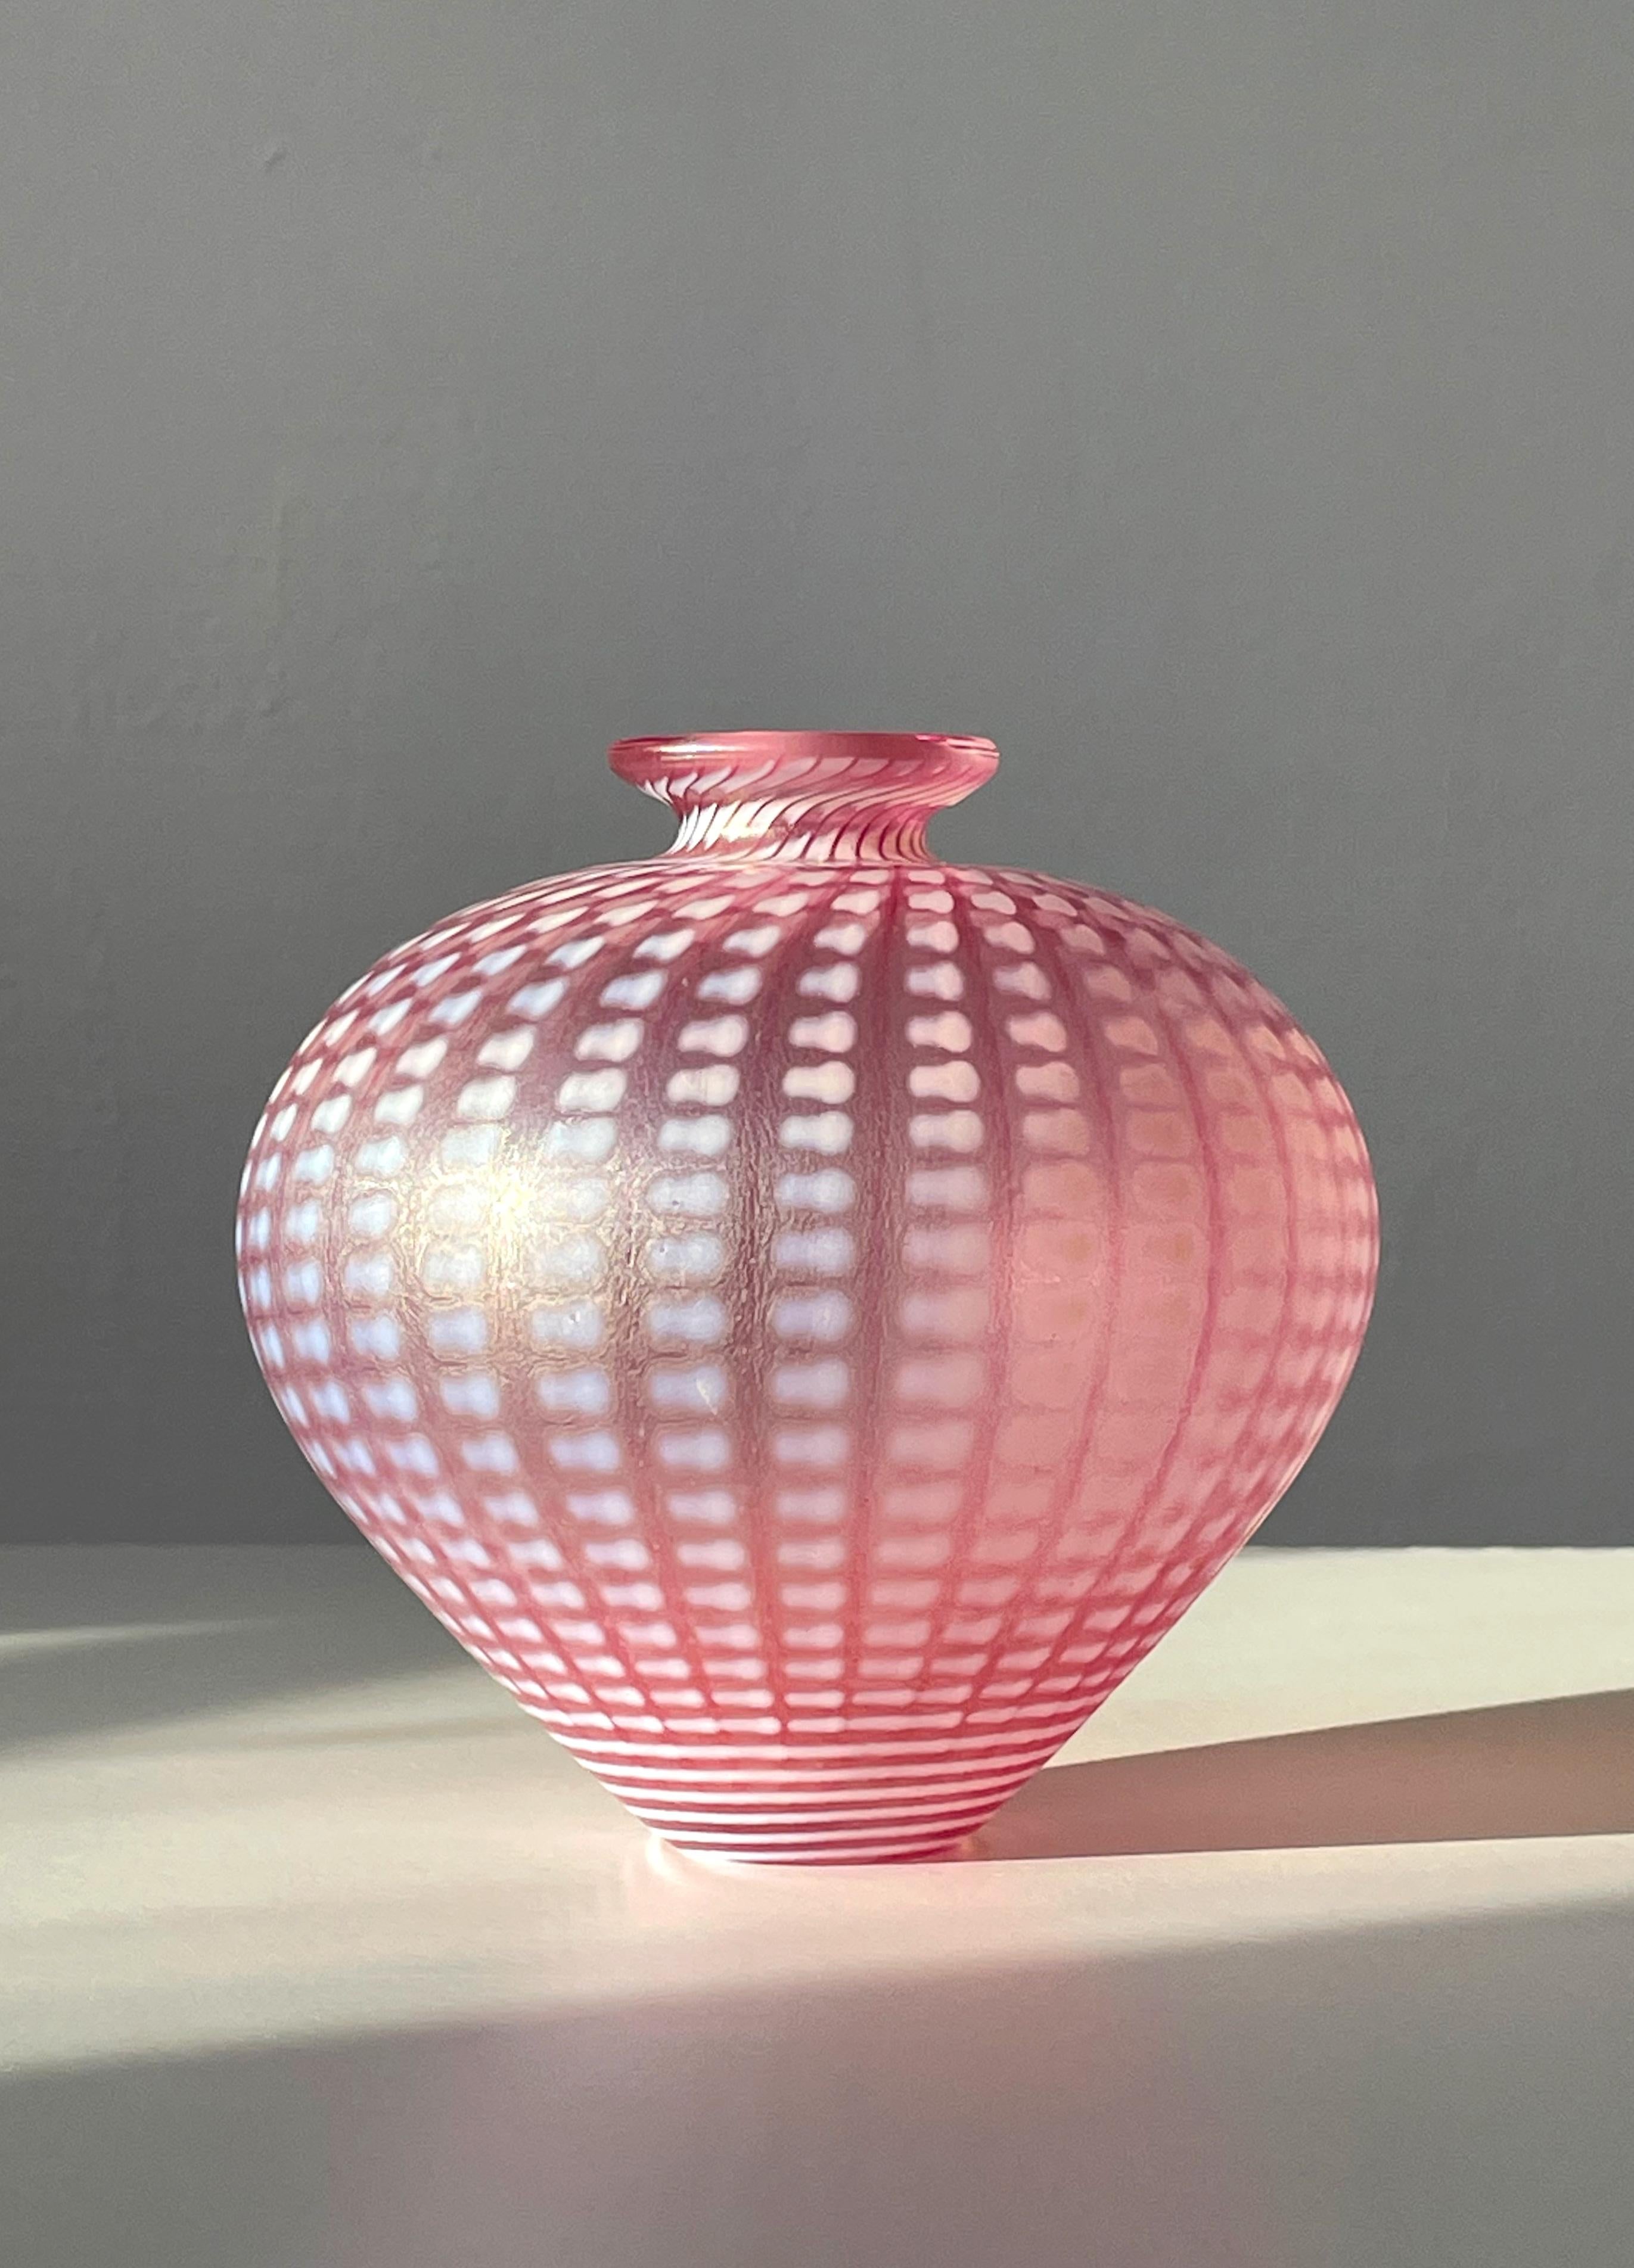 Exquis vase en verre d'art rose et blanc de la série Minos 1984 de Bertil Vallien pour la Kosta Boda Artist Collection. Un cou mince et une base étroite sous un corps voluptueux gonflant avec une surface irisée et un éclat de nacre sur le motif